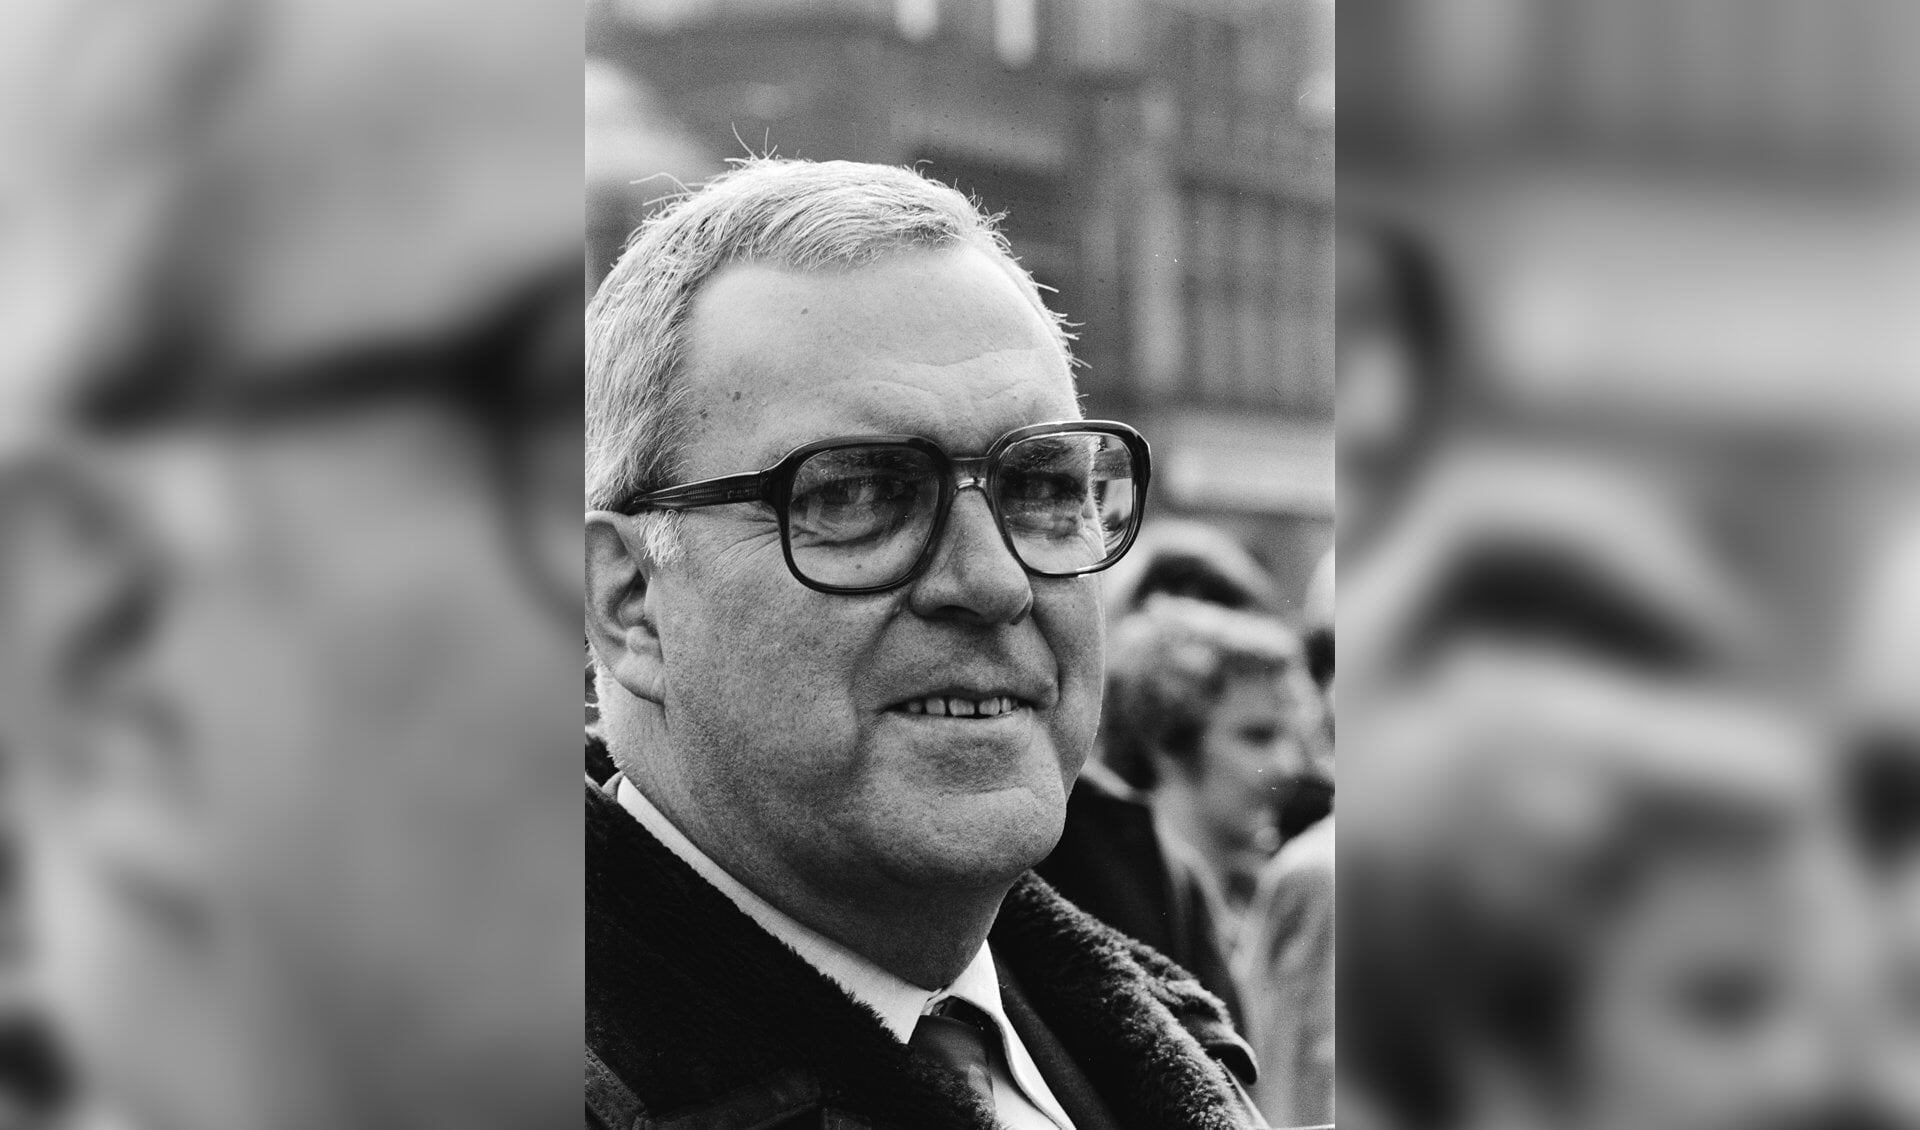 Arie Lems was van 1979 tot 1988 burgemeester van Zaanstad.